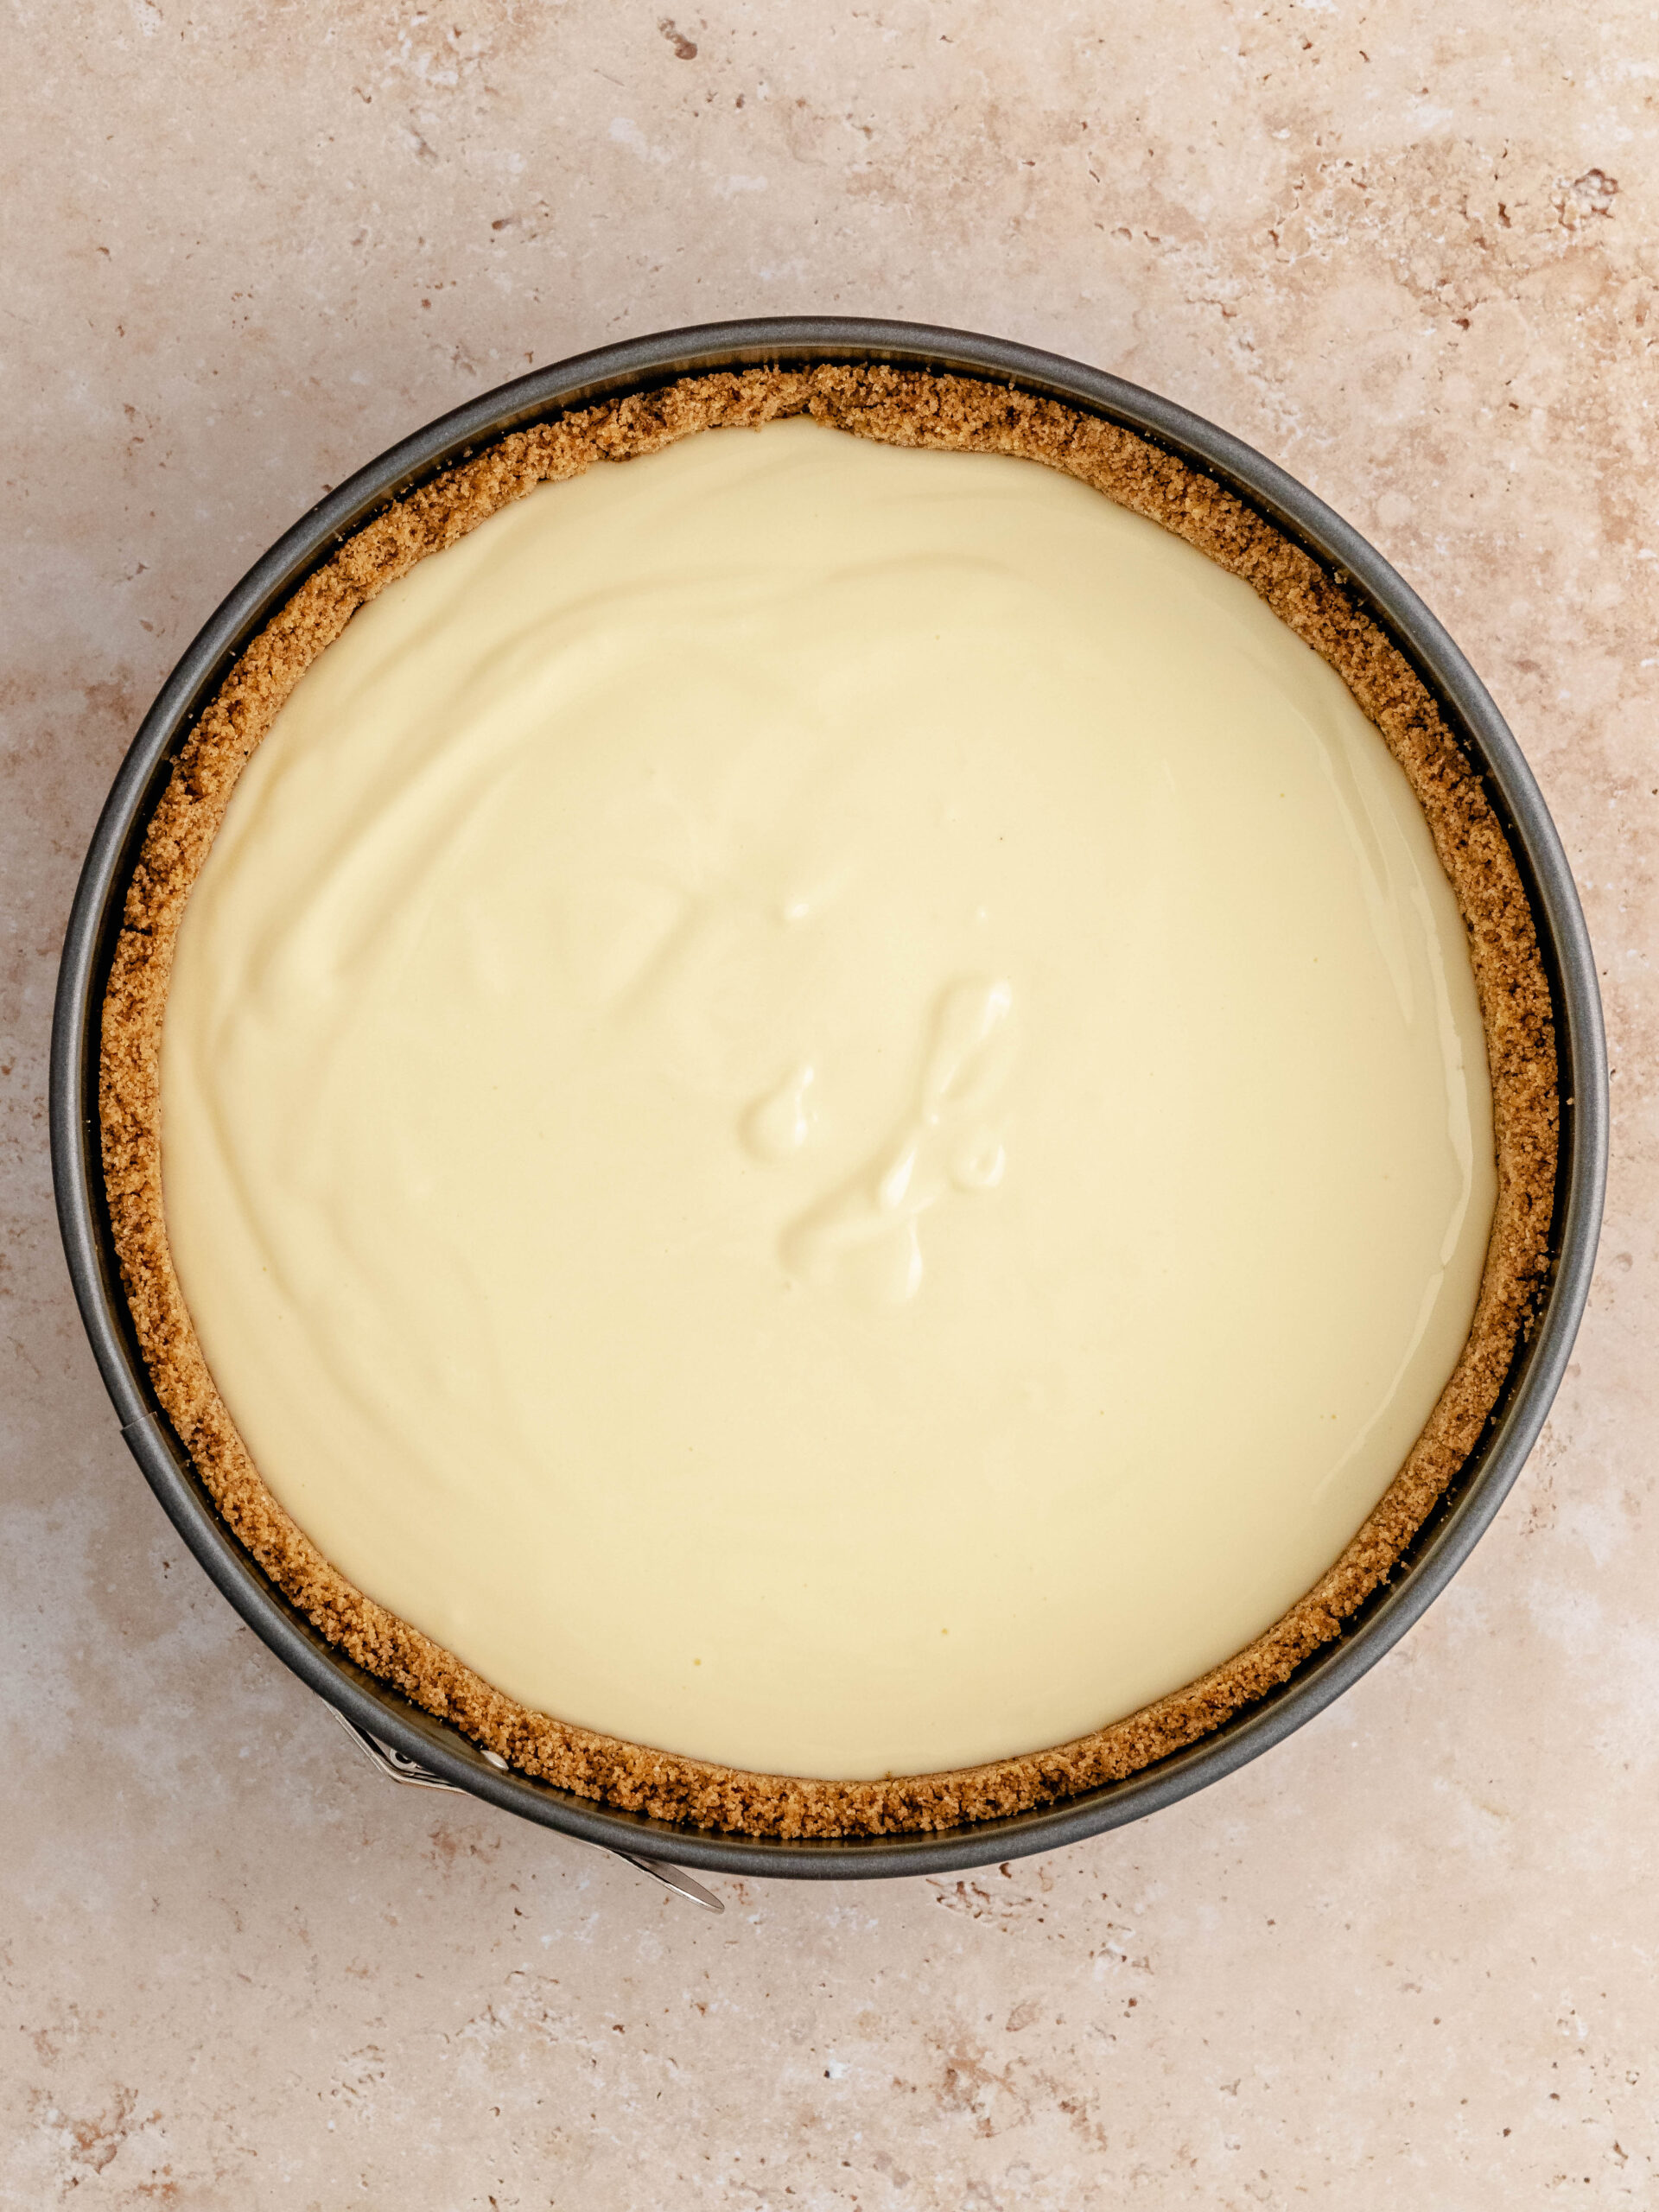 Fyldet med cheesecake hældes i kagebunden.